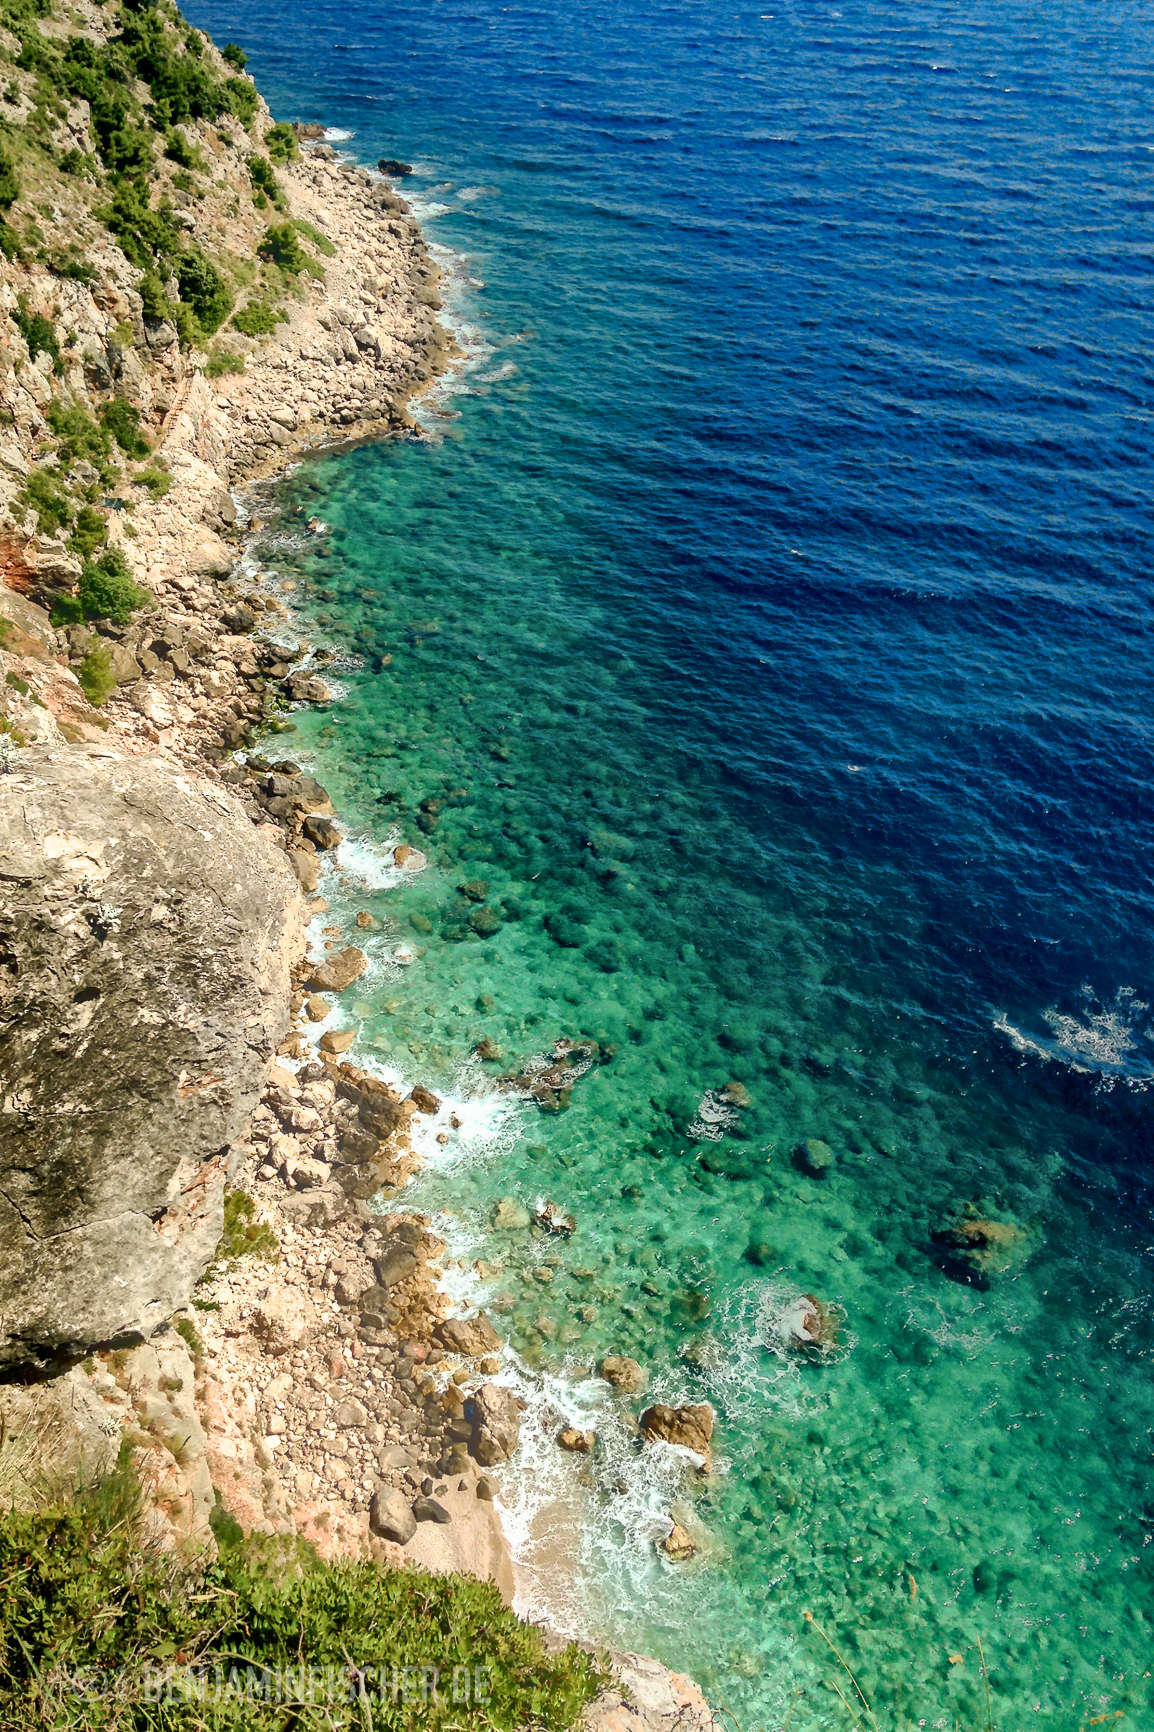 Die Seeigel-Unterwasser-Videos waren leider bei den gestohlenen Sachen. Hier stattdessen der Beleg: Mehr Fels- als Sandstrand in Kroatien.